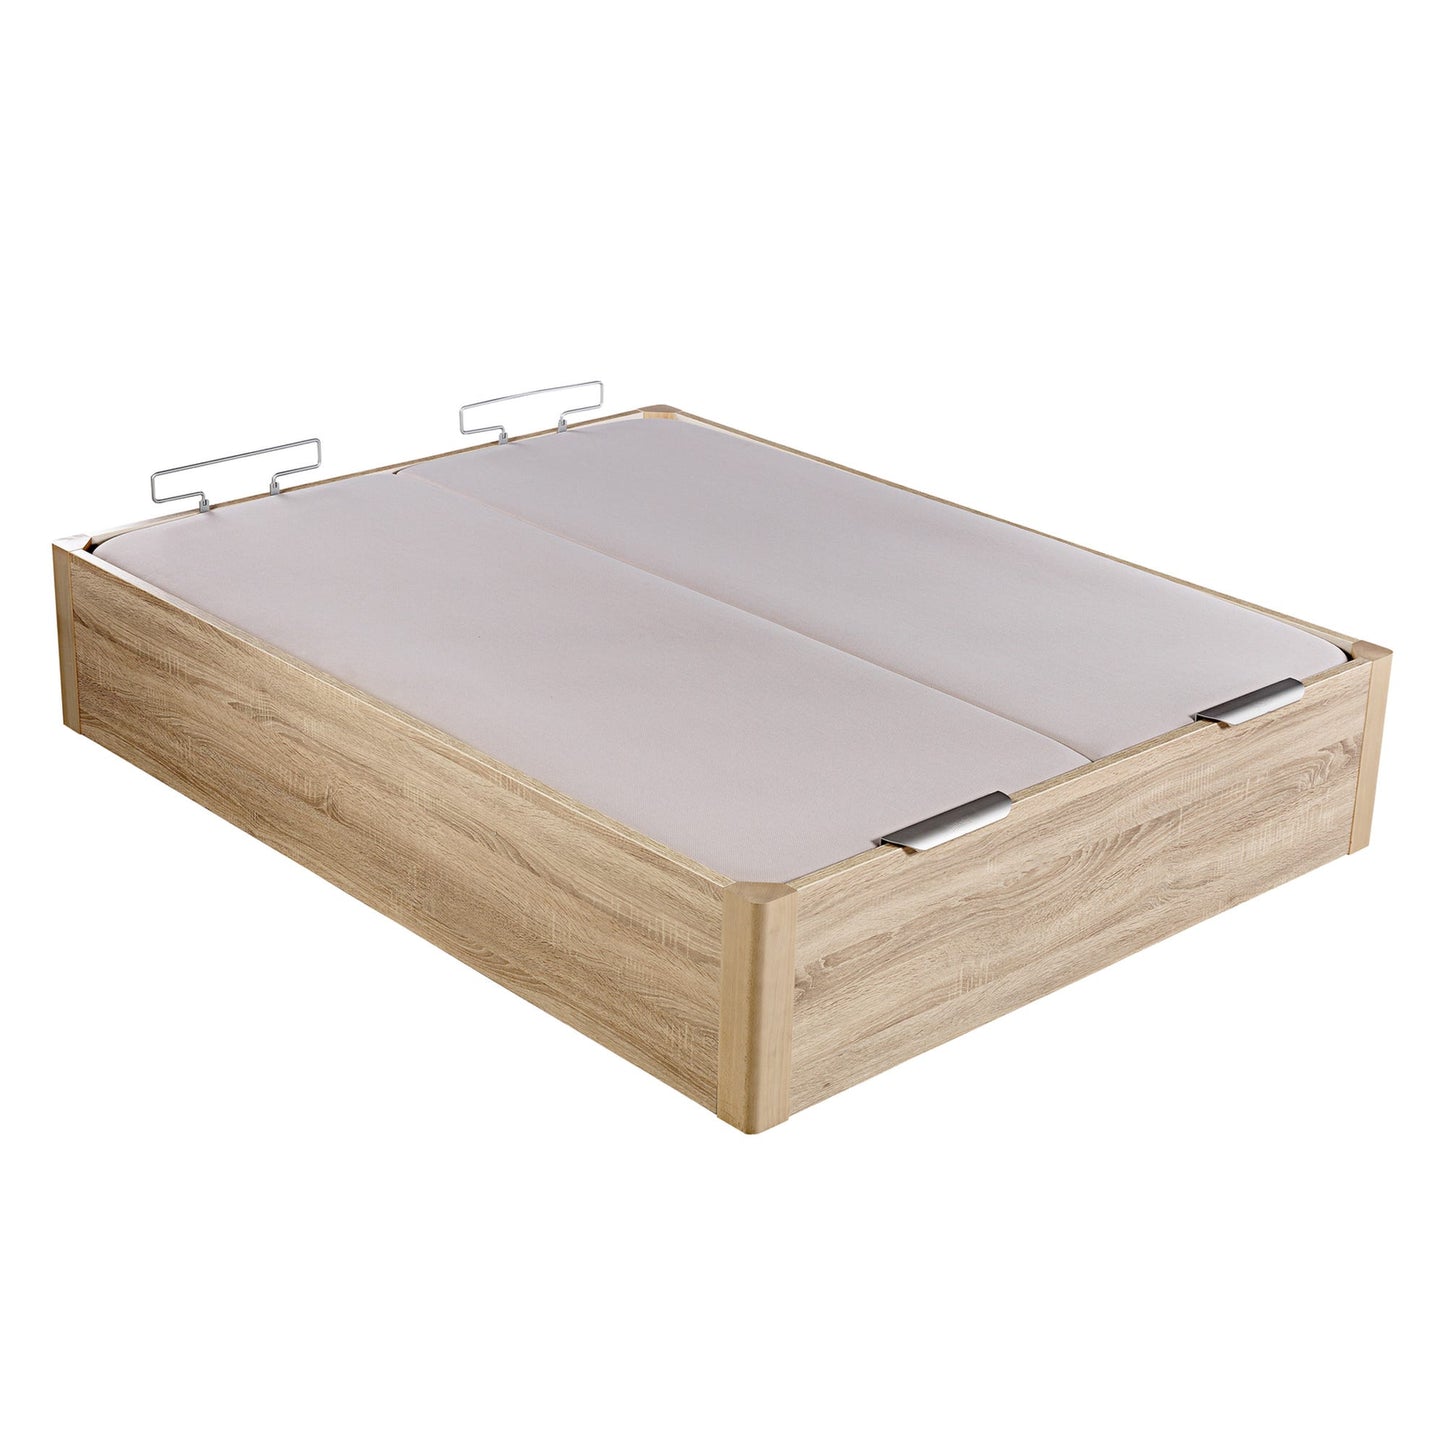 Canapé abatible de madera de alta capacidad tapa doble de color natural - DESIGN - 180x182